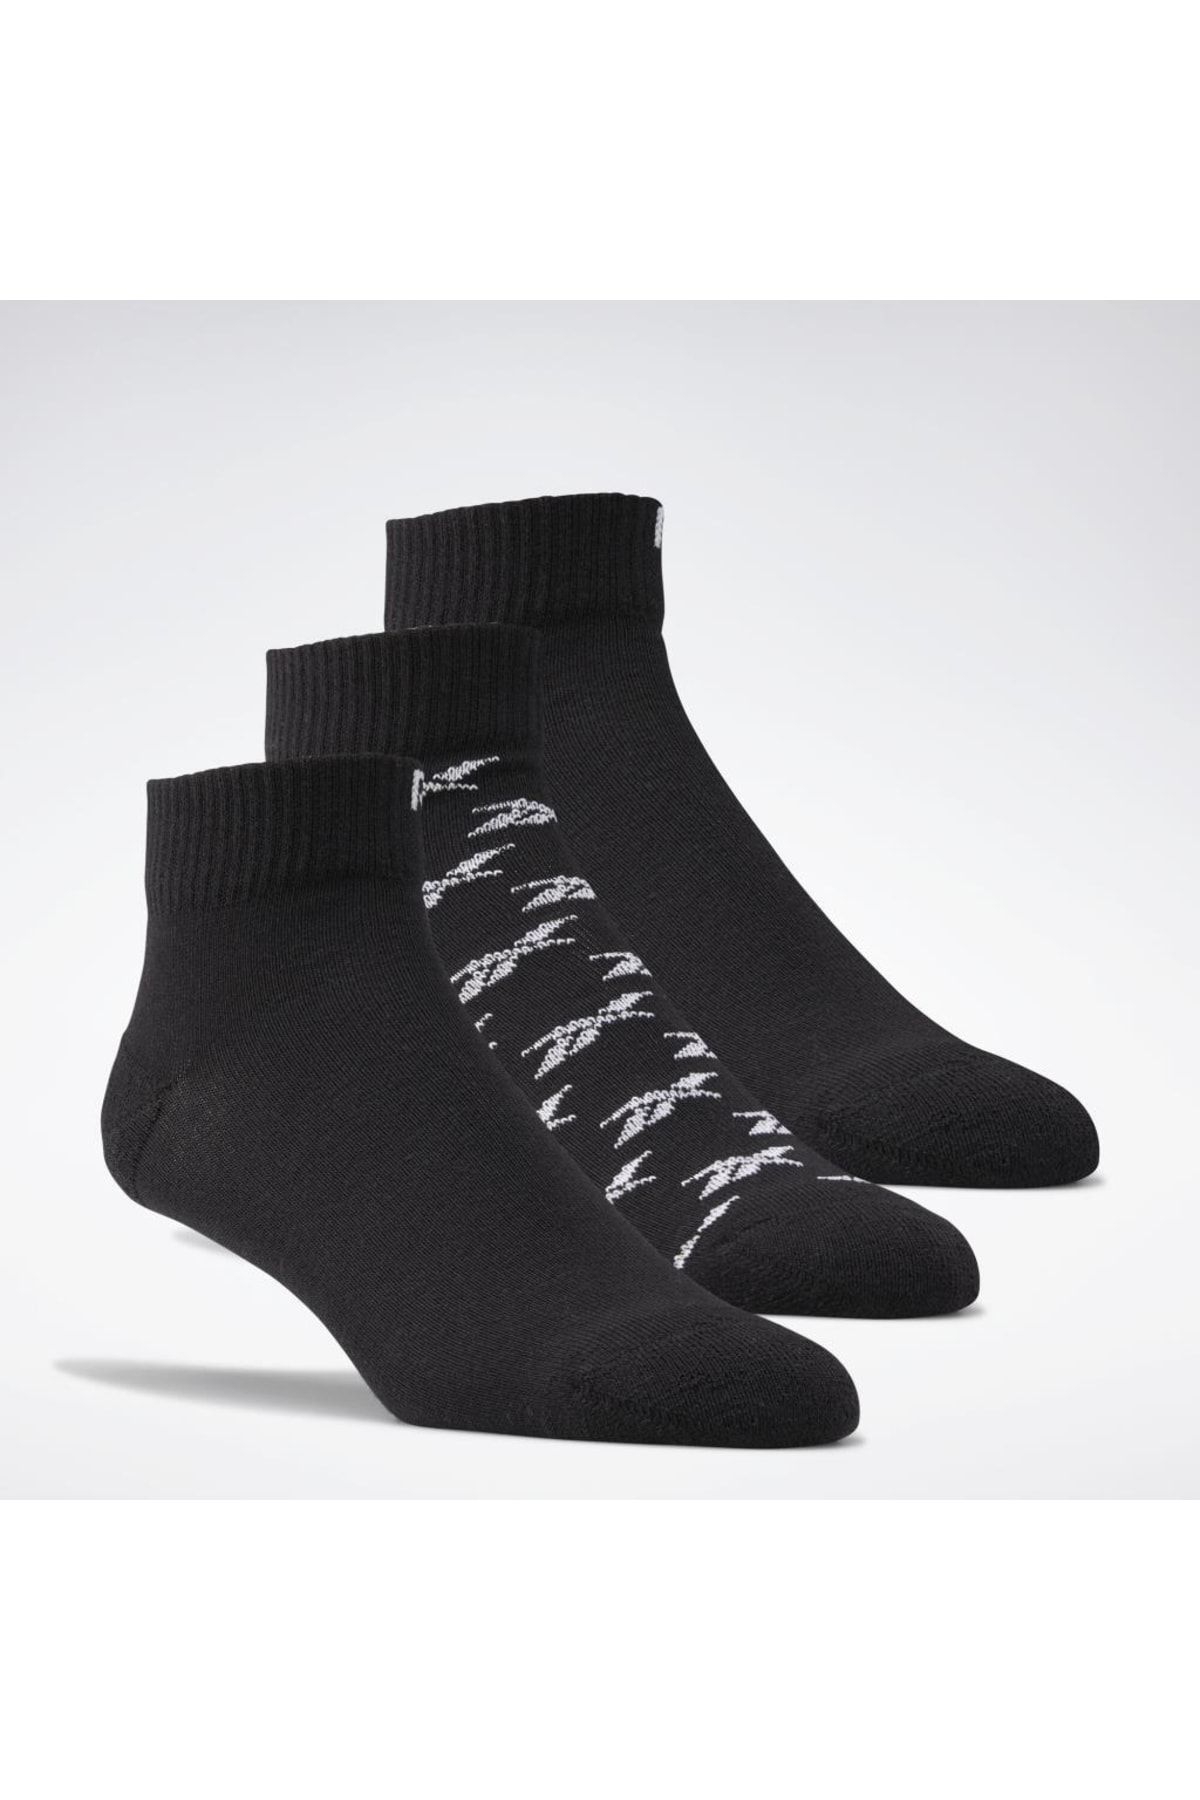 Reebok Gg6675 Pakette 3 Çift Siyah Bilek Çorap